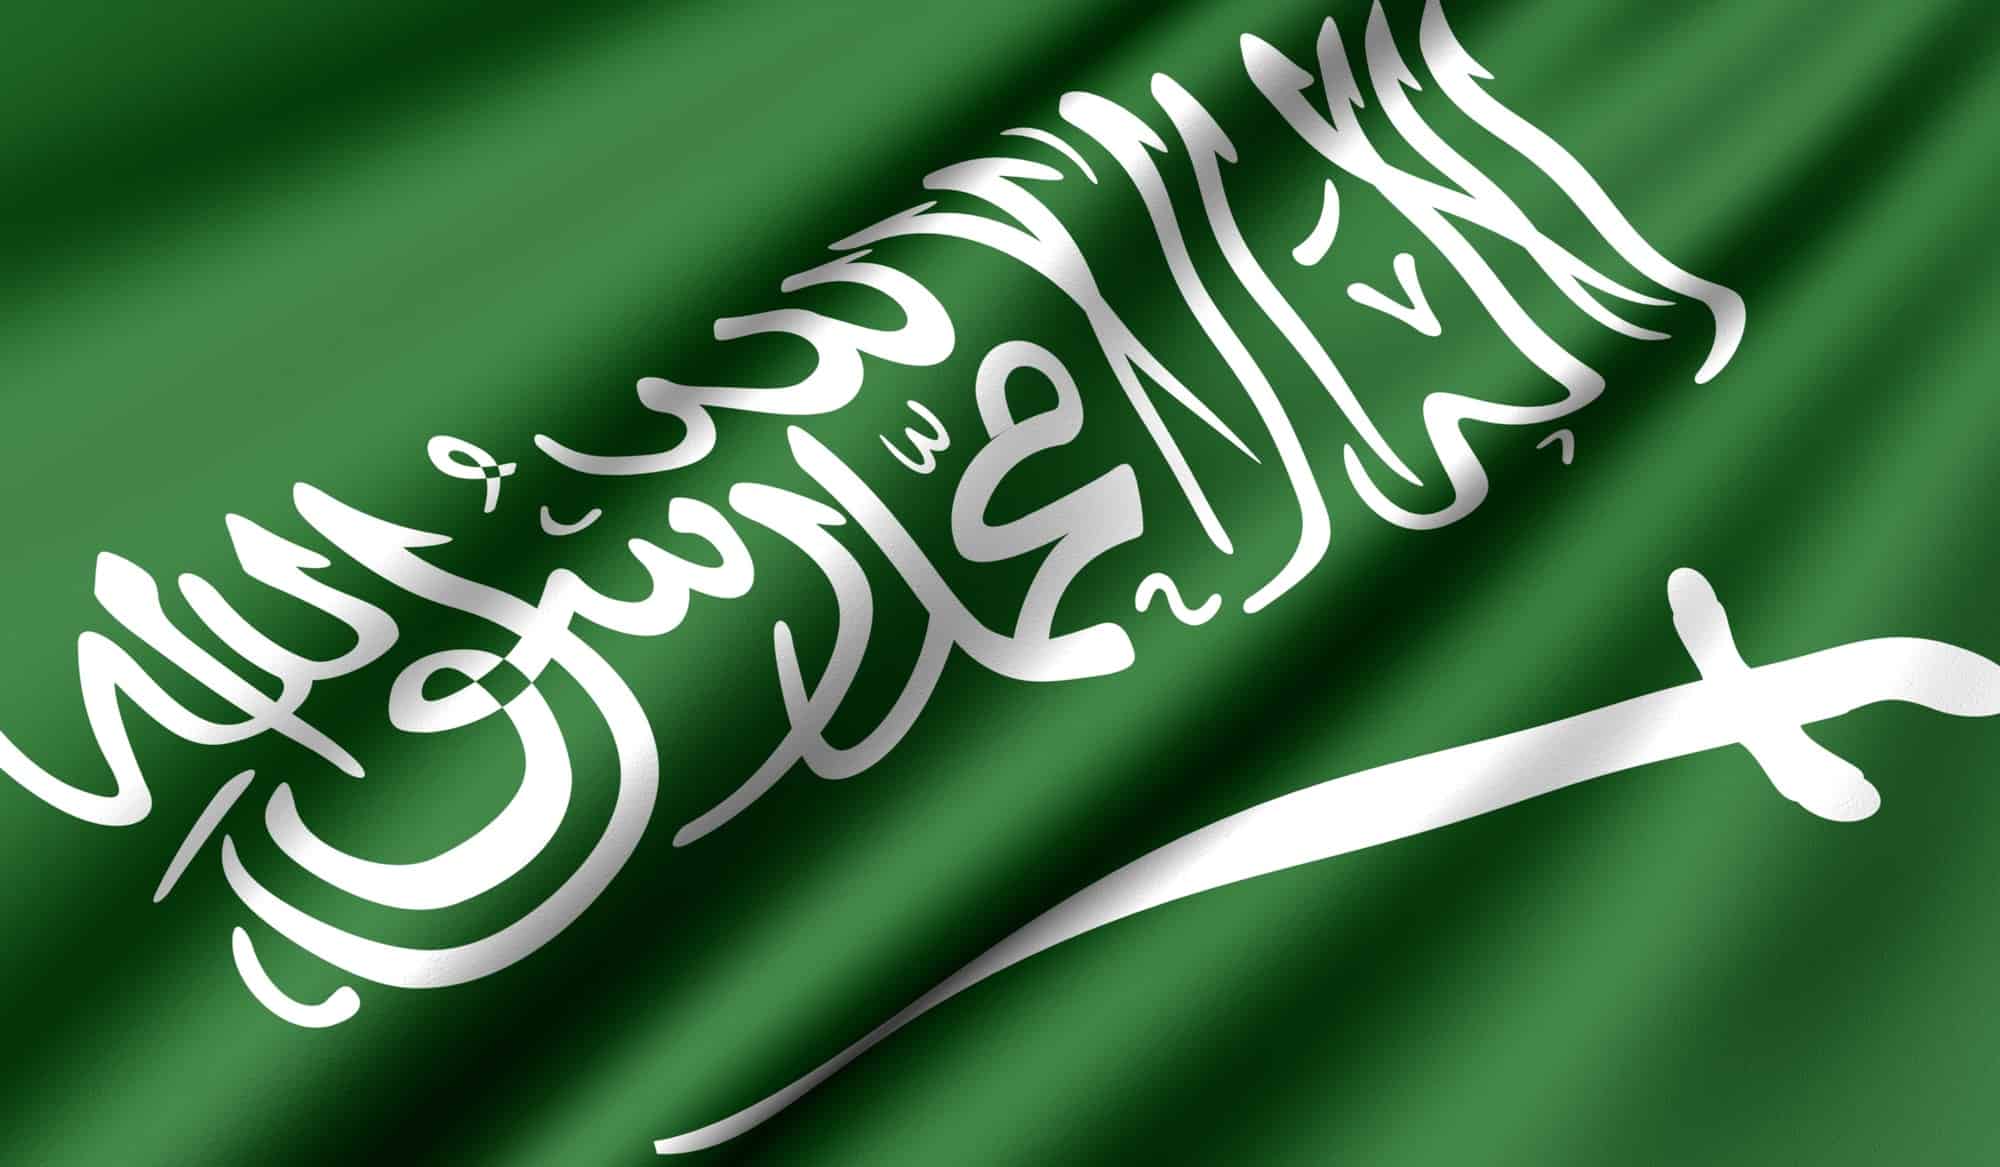 الجهة الوطنية التي تُعنى بتوثيق الأنظمة السعودية هي المركز الوطني لللوثائق والمحفوظات